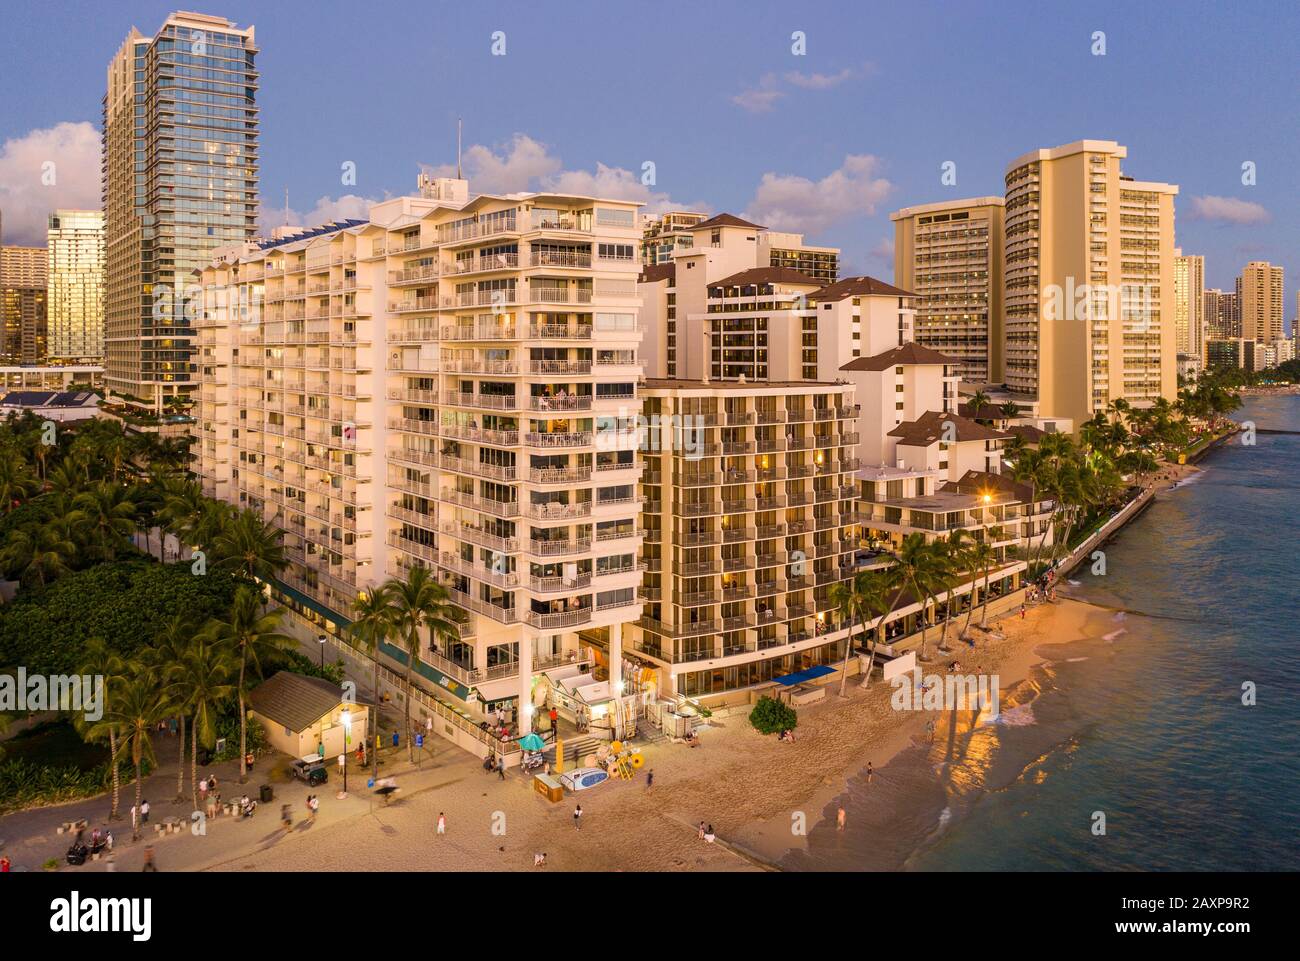 Panorama aérien de la plage de Waikiki et des hôtels sur Oahu, Hawaï au coucher du soleil Banque D'Images